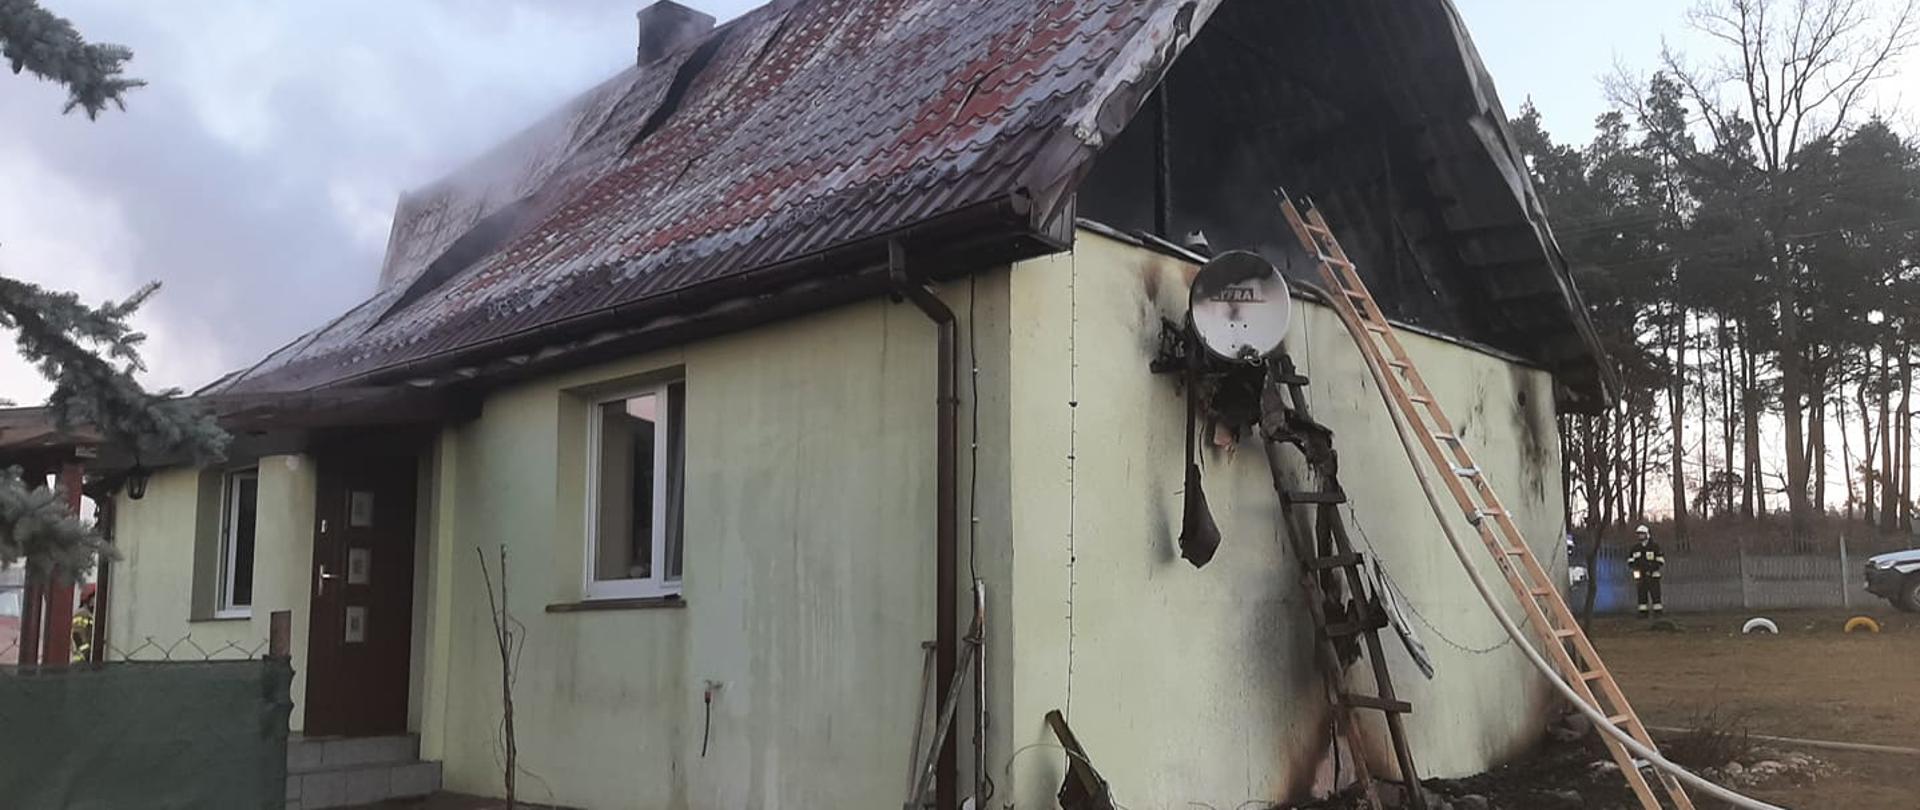 Zdjęcie przedstawia dom jednorodzinny, w którym spaleniu uległo poddasze. Brak ściany szczytowej. O budynek oparte są drabiny. Z dachu wydobywa się dym. 